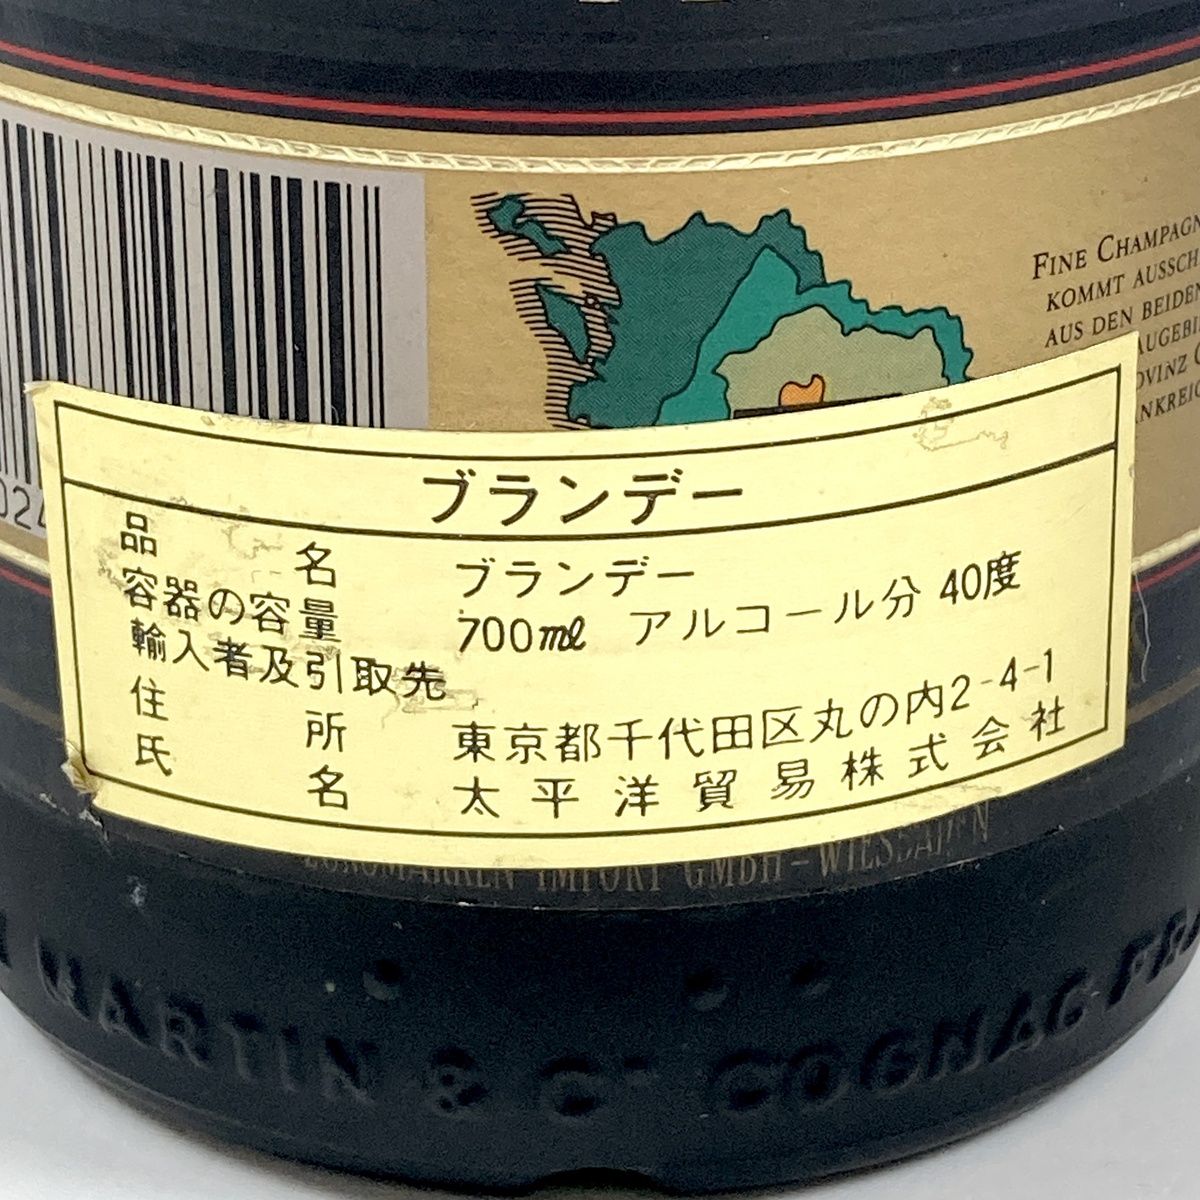 4本 REMY MARTIN CAMUS コニャック 700ml ブランデー セット 【古酒】 - メルカリ